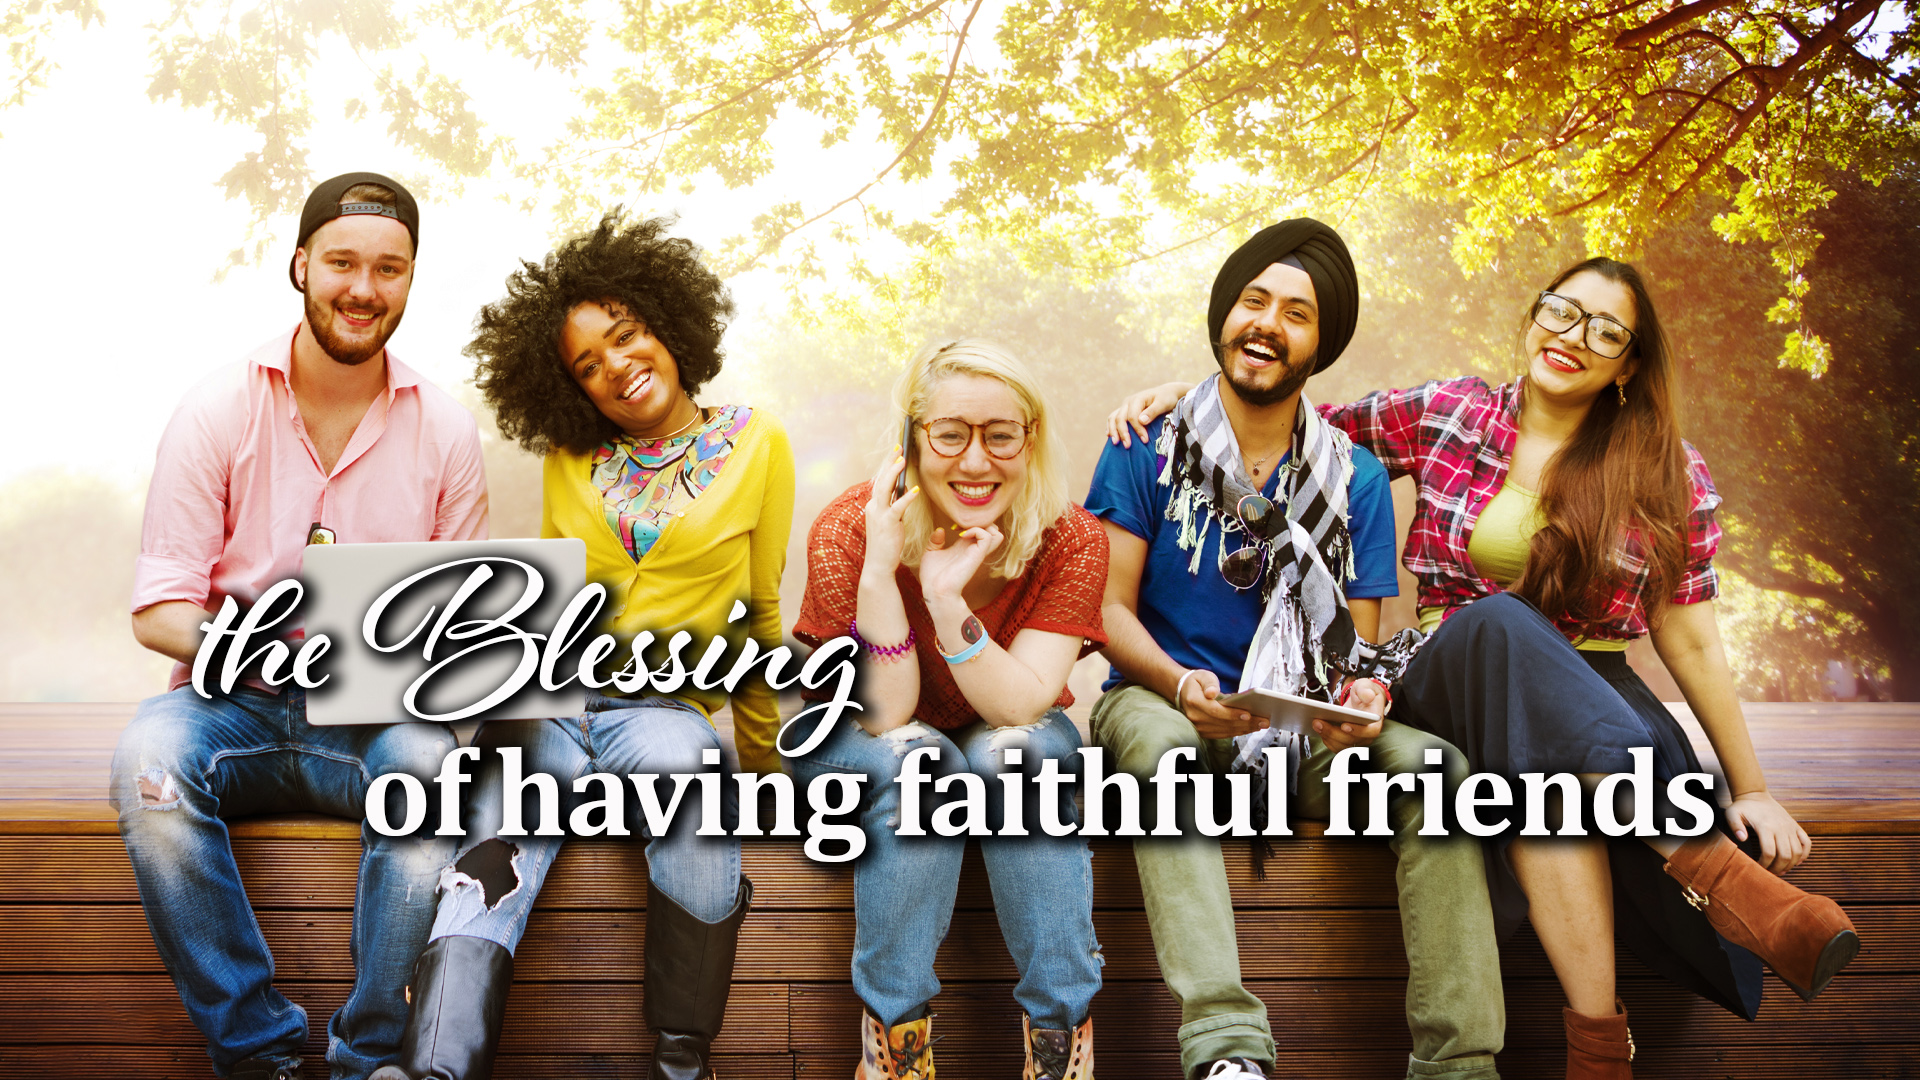 11-23-21 Blessing of having faithful friends